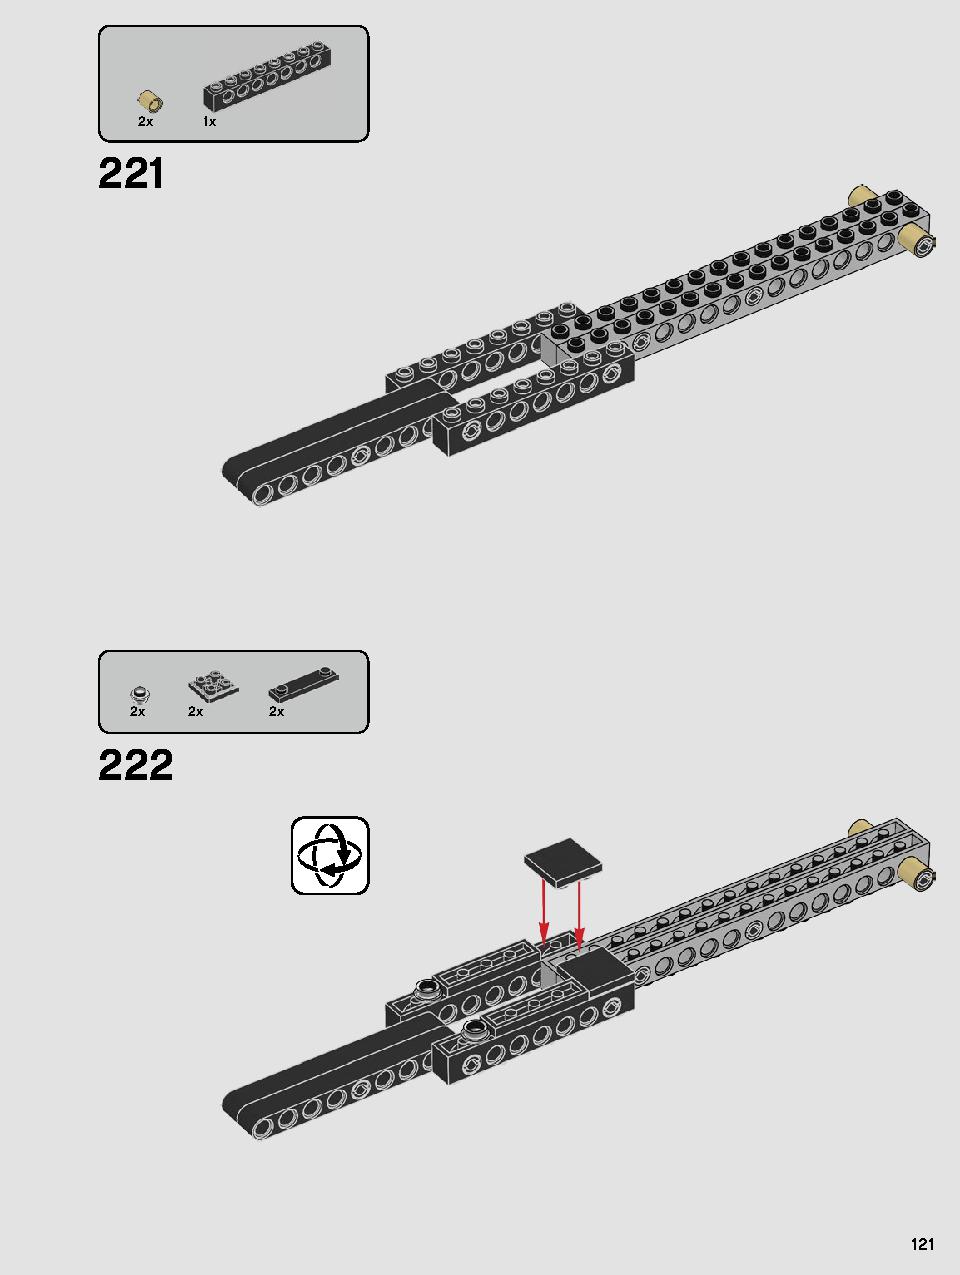 스타워즈 카일로 렌의 셔틀™ 75256 레고 세트 제품정보 레고 조립설명서 121 page